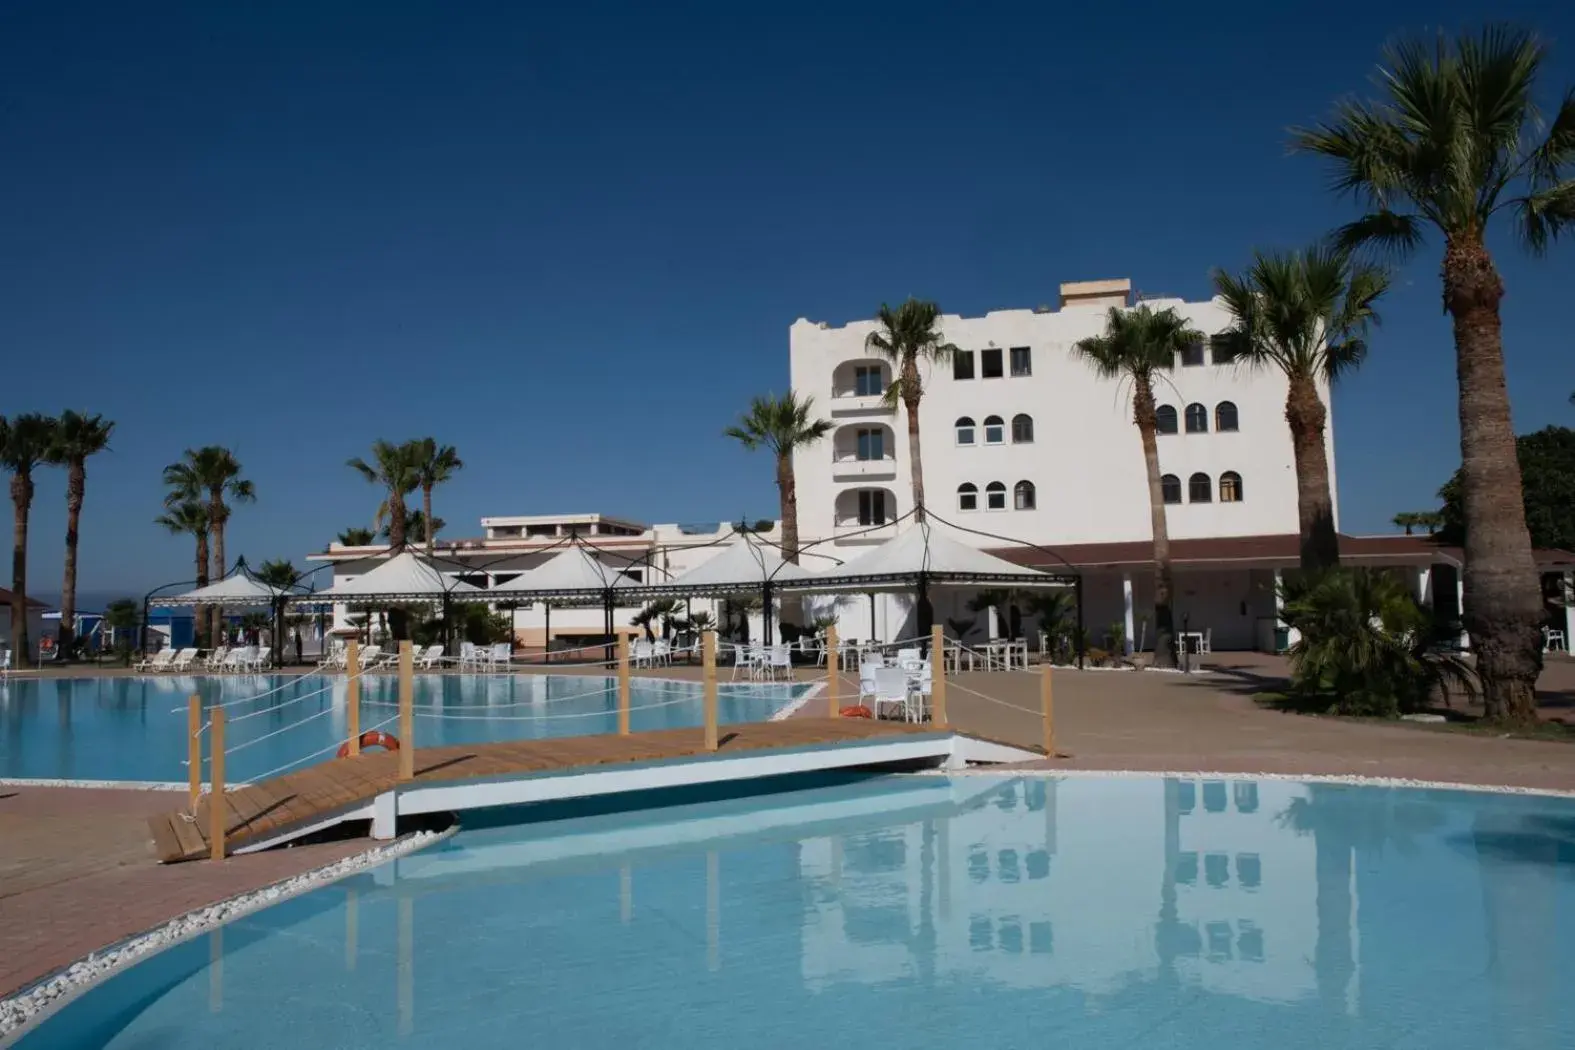 Swimming Pool in Hotel Baia D'oro